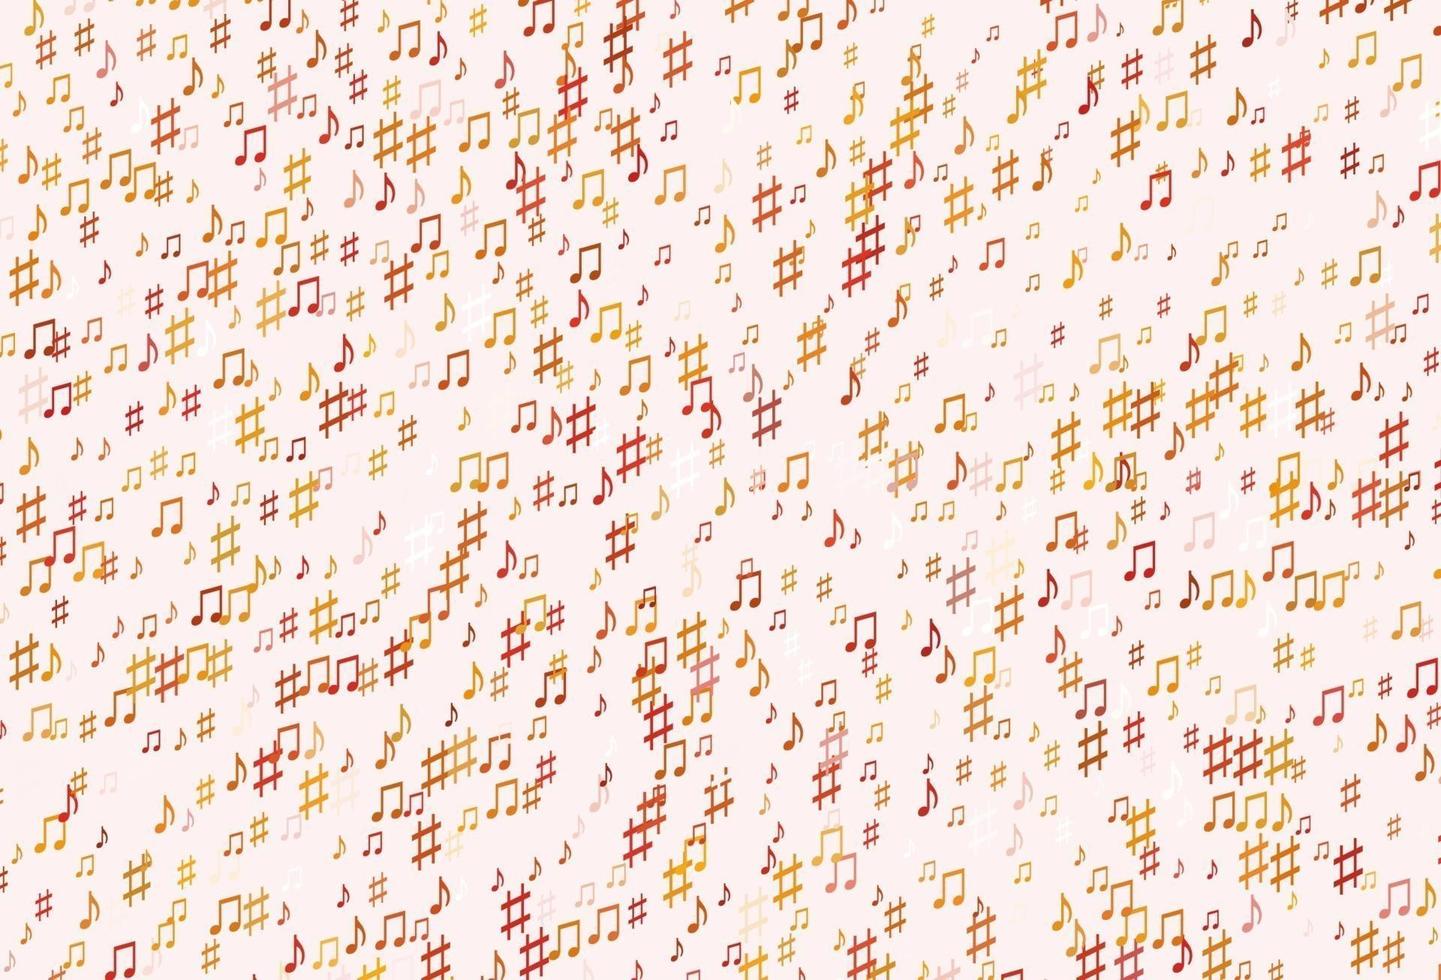 ljusröd, gul vektorstruktur med musiknoter. vektor